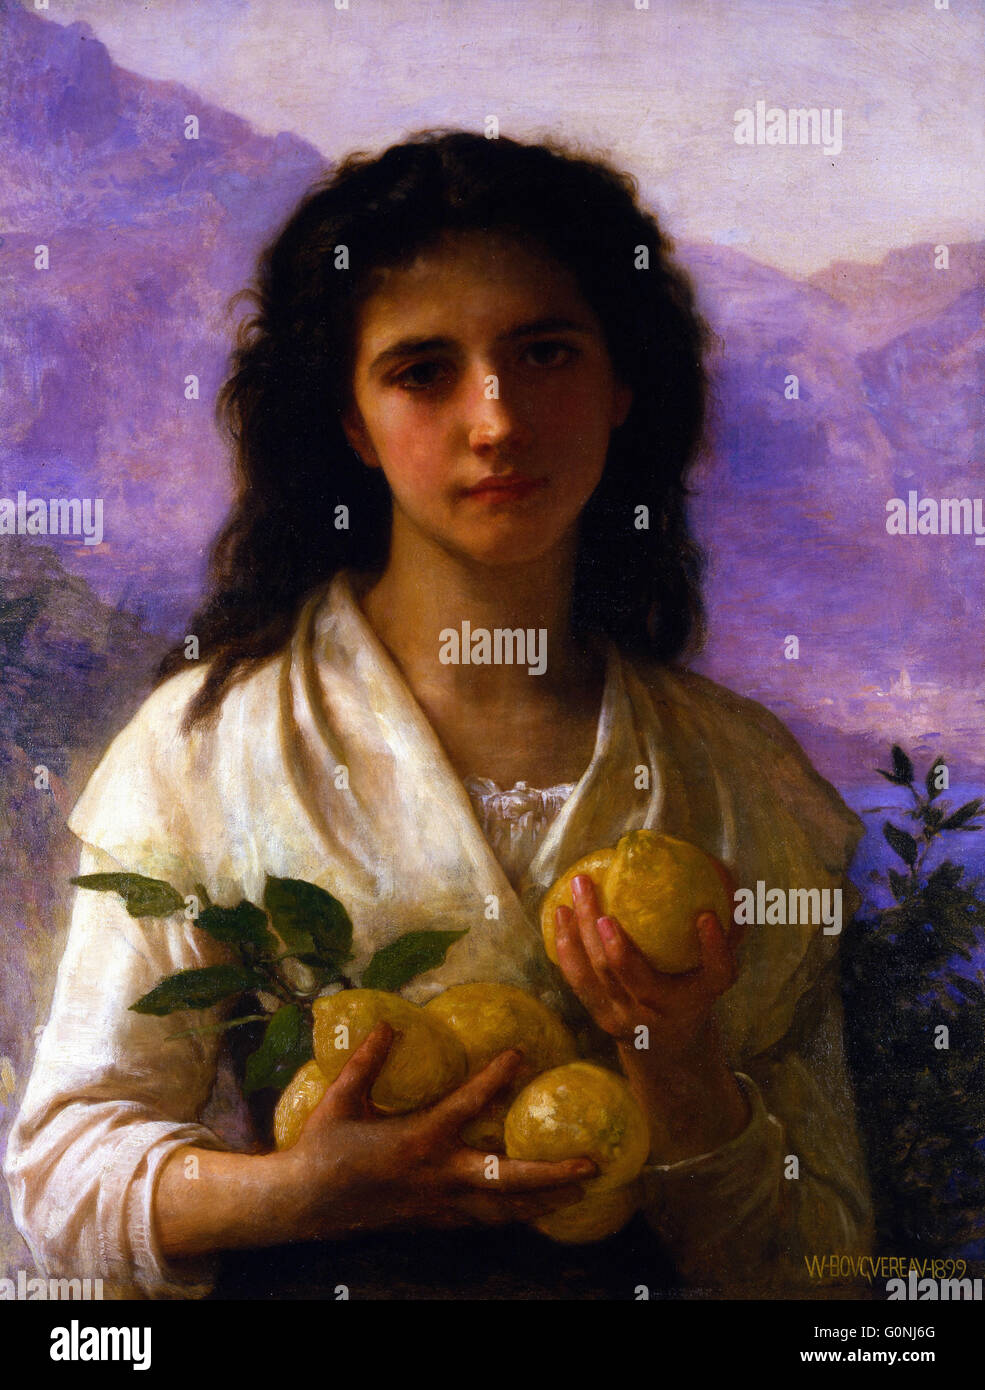 William Adolphe Bouguereau - Girl Holding Lemons Stock Photo